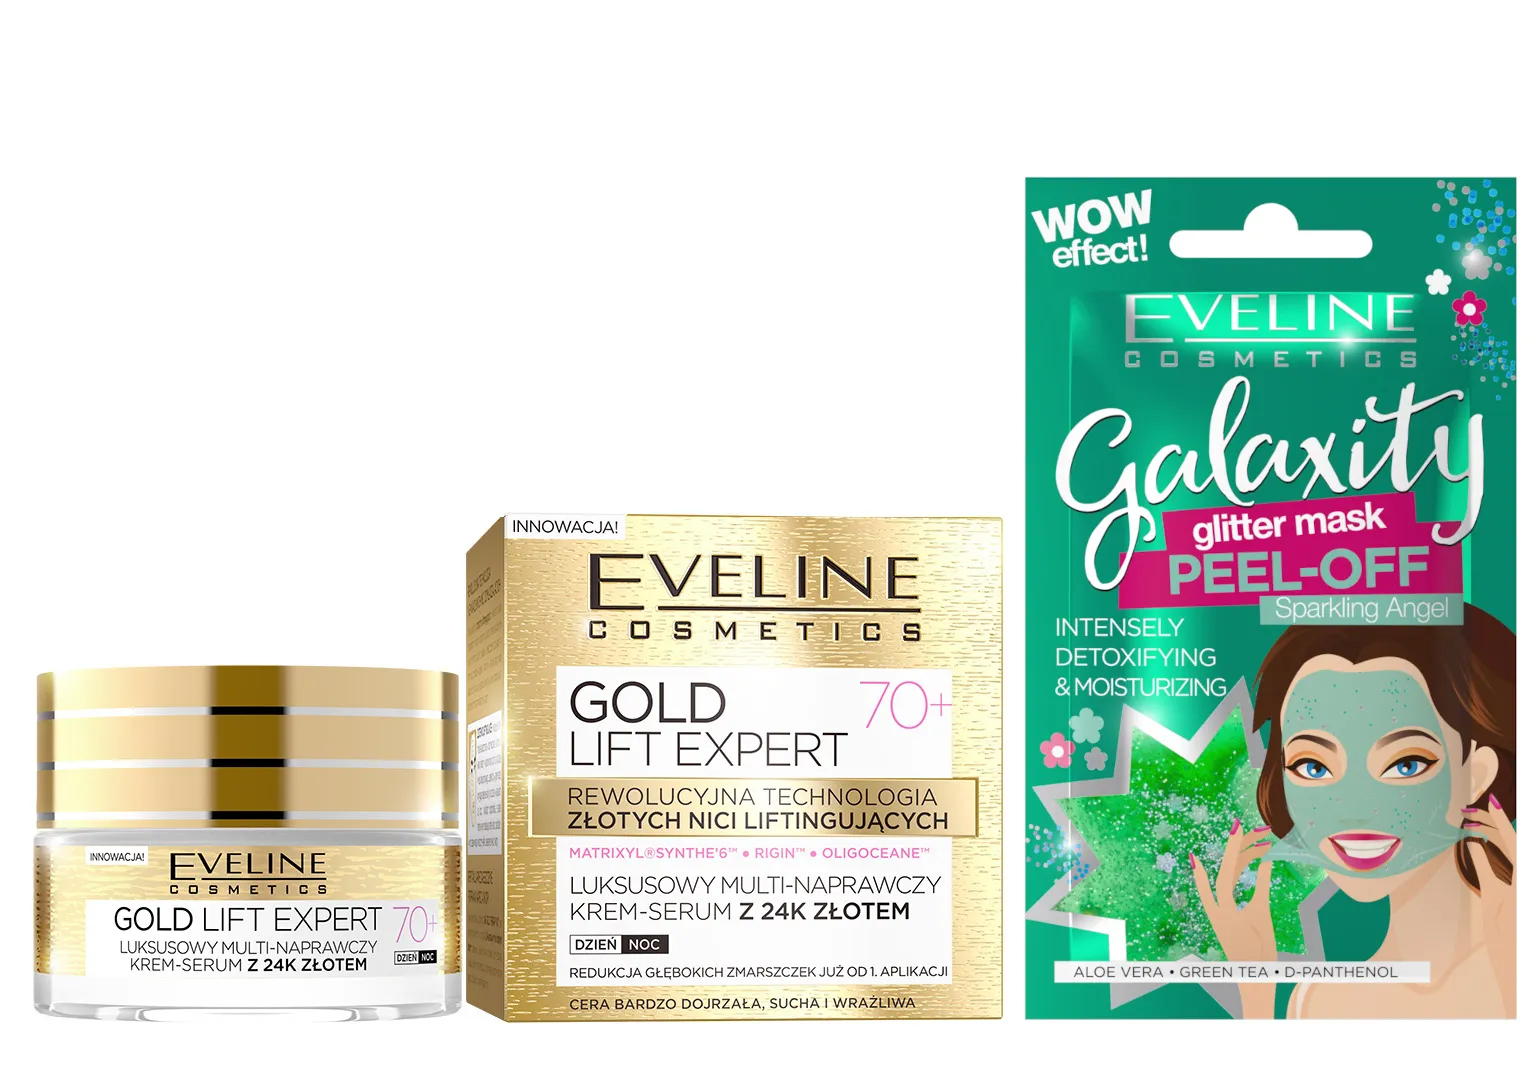 Eveline Cosmetics Gold Lift Expert Luksusowy multi-naprawczy krem-serum z 24 złotem, 70+, 50 ml + Eveline Cosmetics Detoksykująco-nawilżająca maseczka peel-off z połyskującymi drobinkami, 10 ml